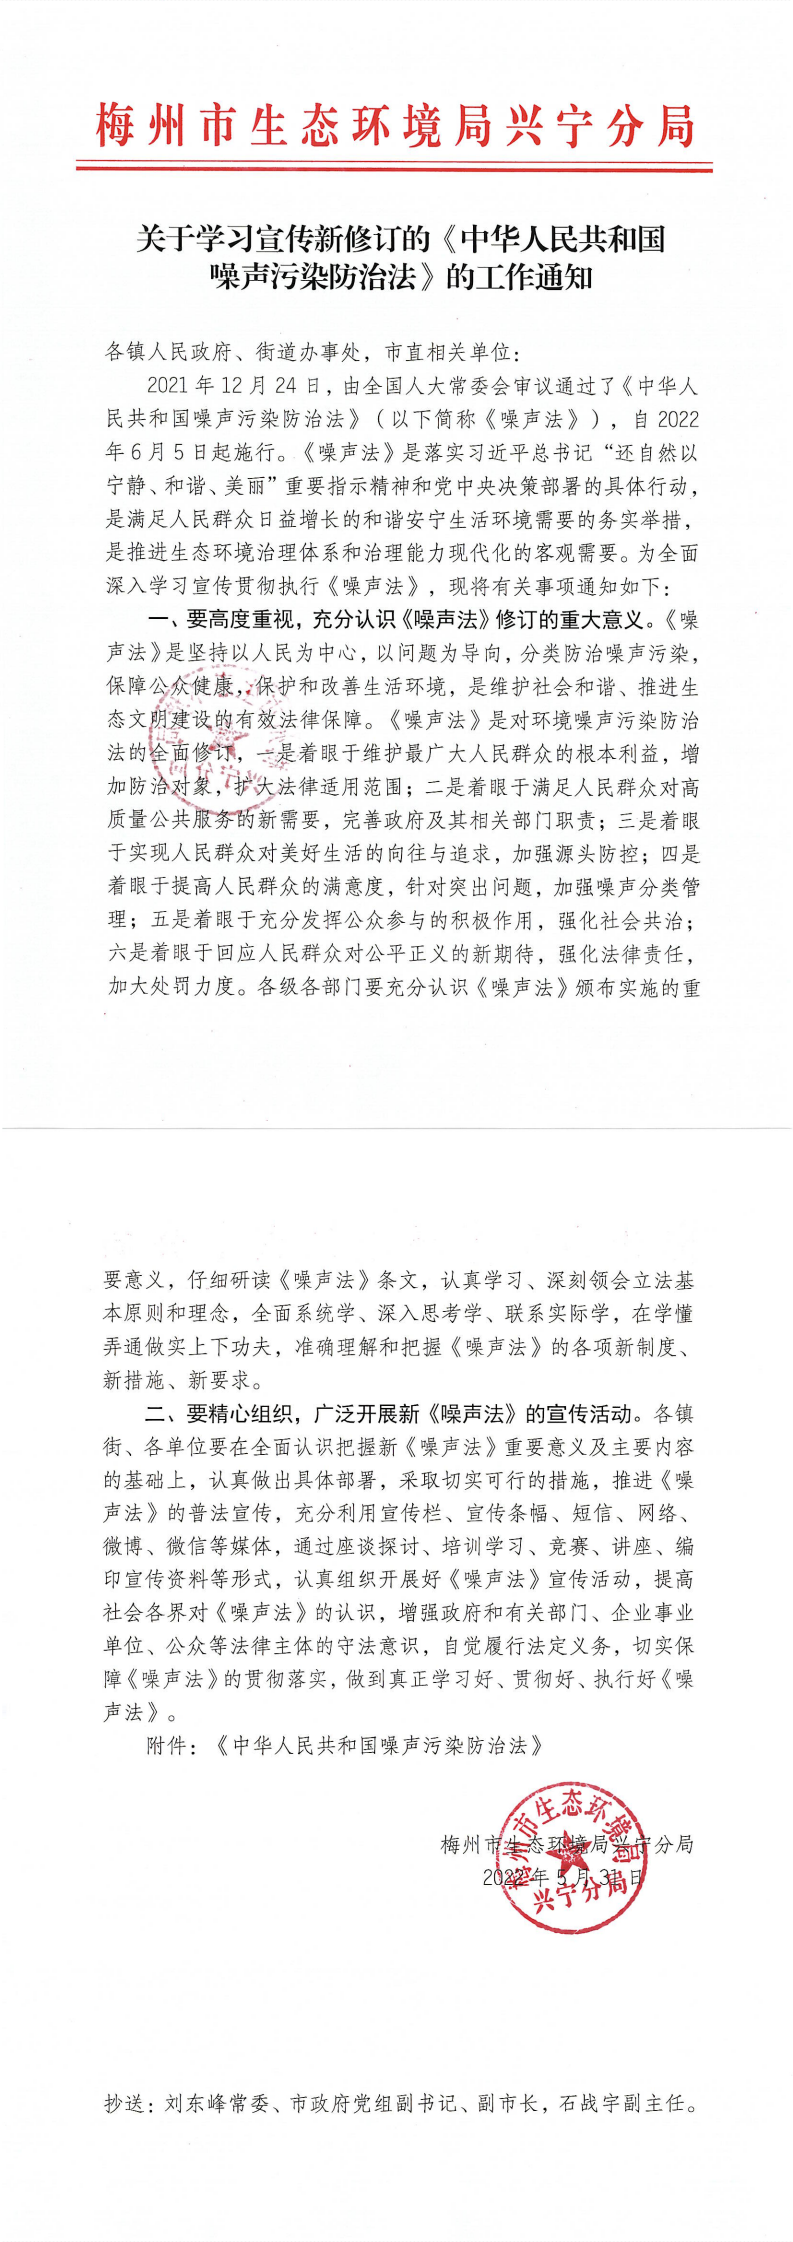 关于学习宣传新修订的《中华人民共和国噪声污染防治法》的工作通知_0.png